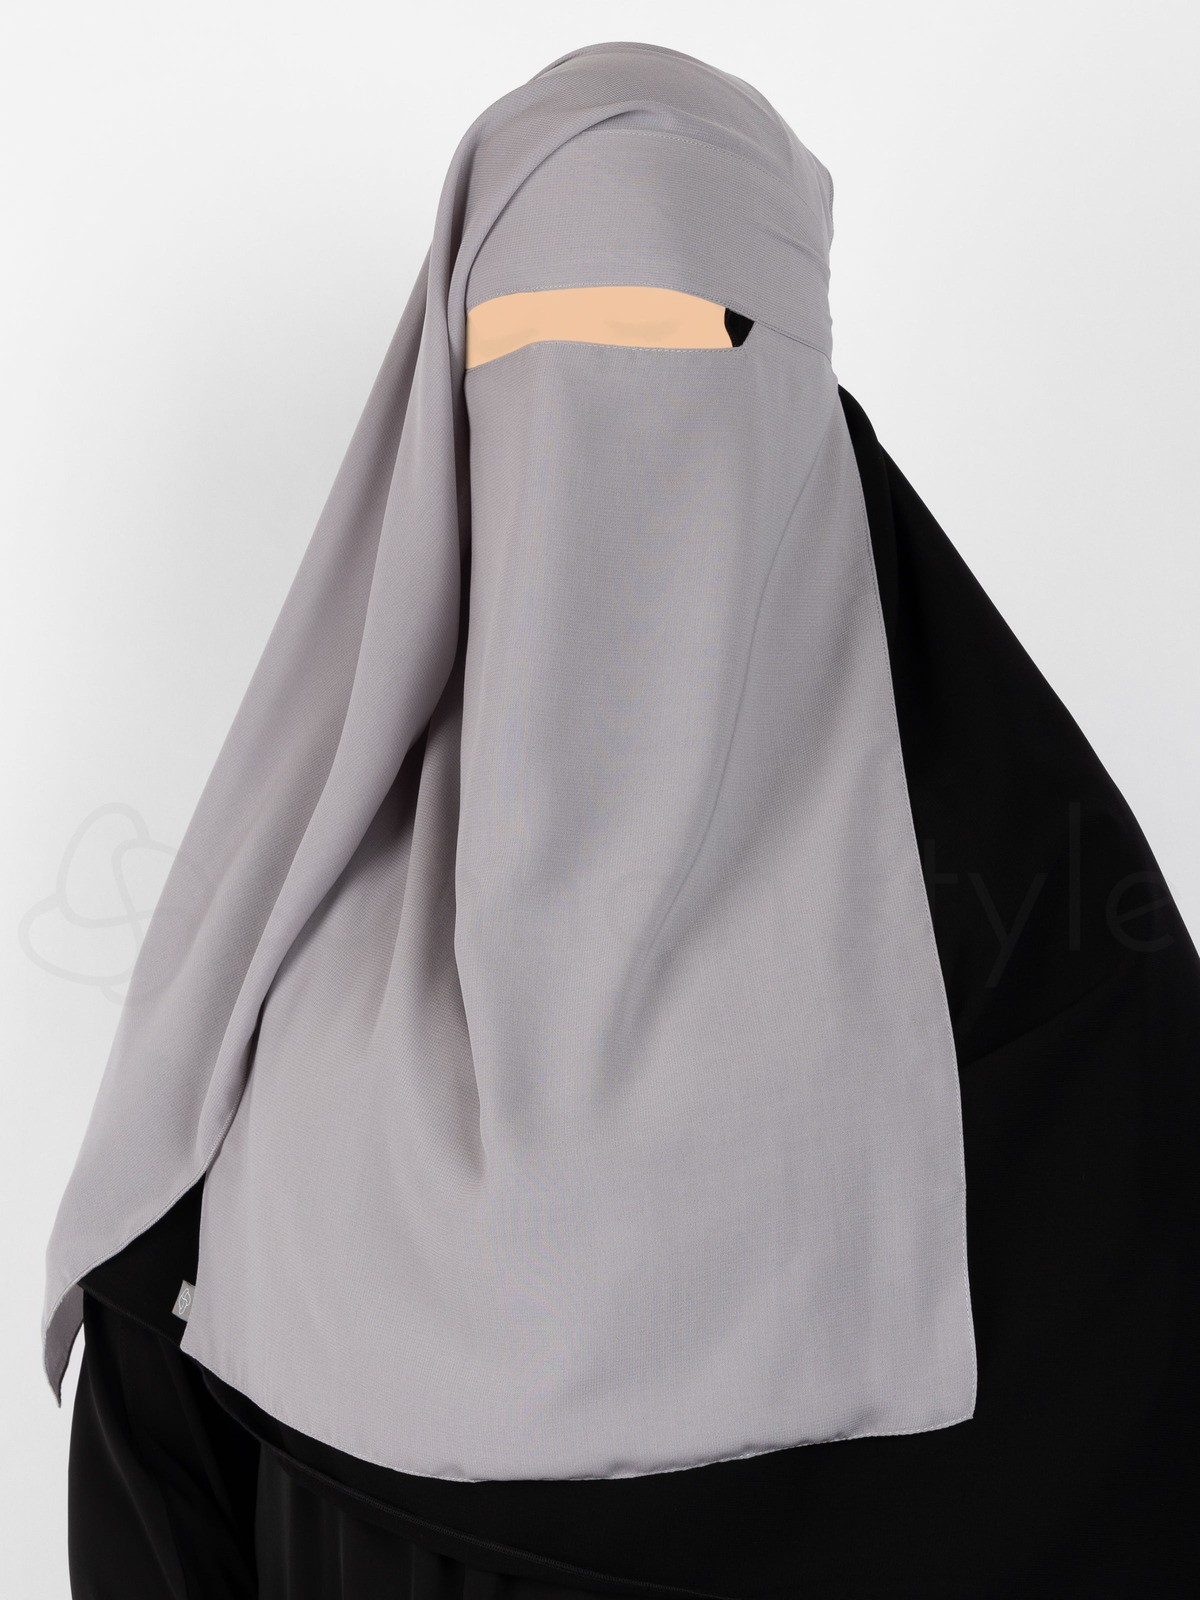 Sunnah Style - Narrow No-Pinch Two Layer Niqab (Dark Grey)